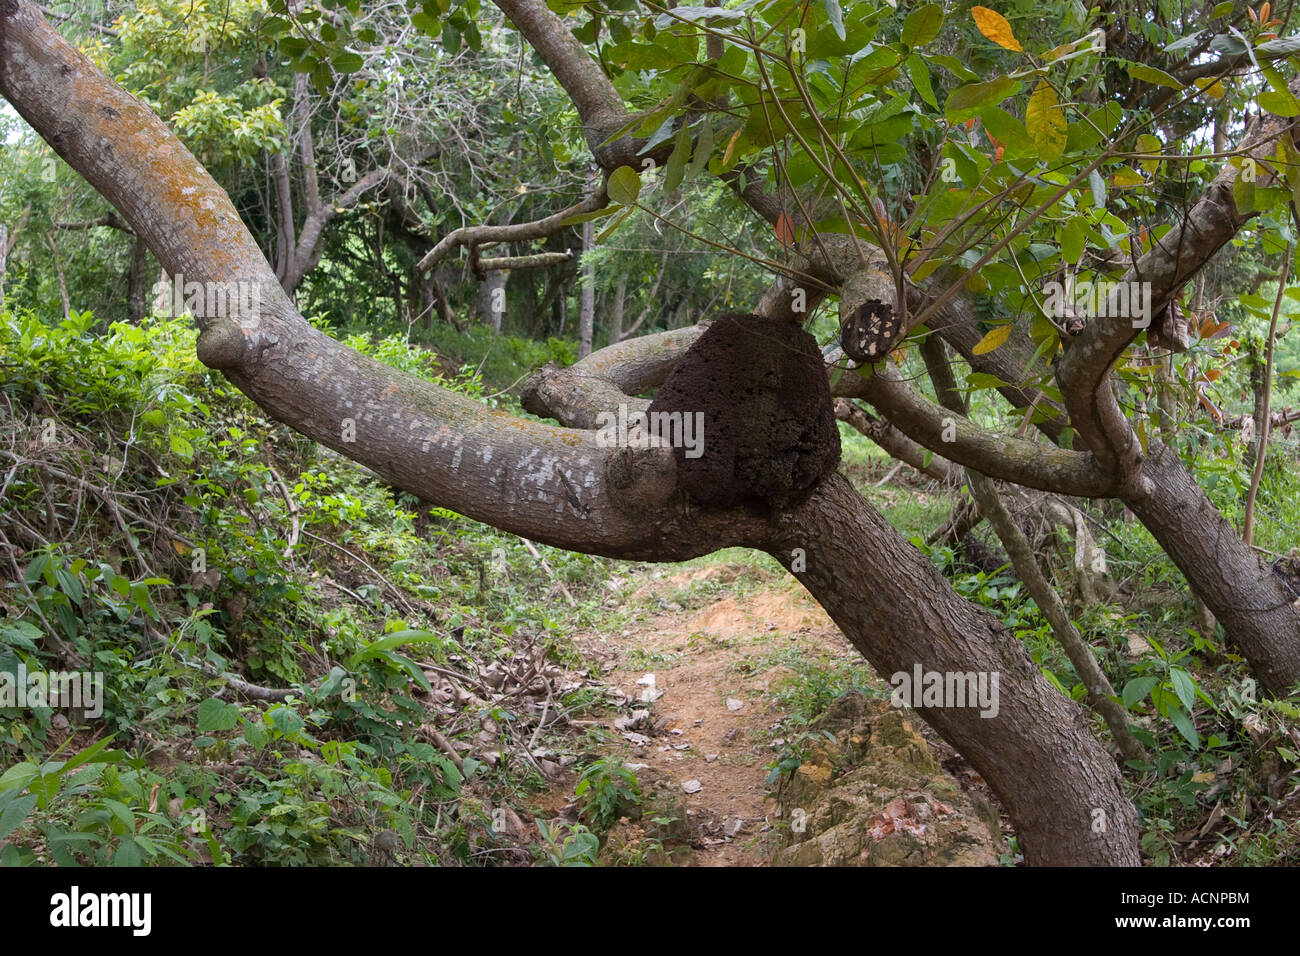 Nidification arboricole aux termites. Capira, Panama, Amérique Centrale Banque D'Images